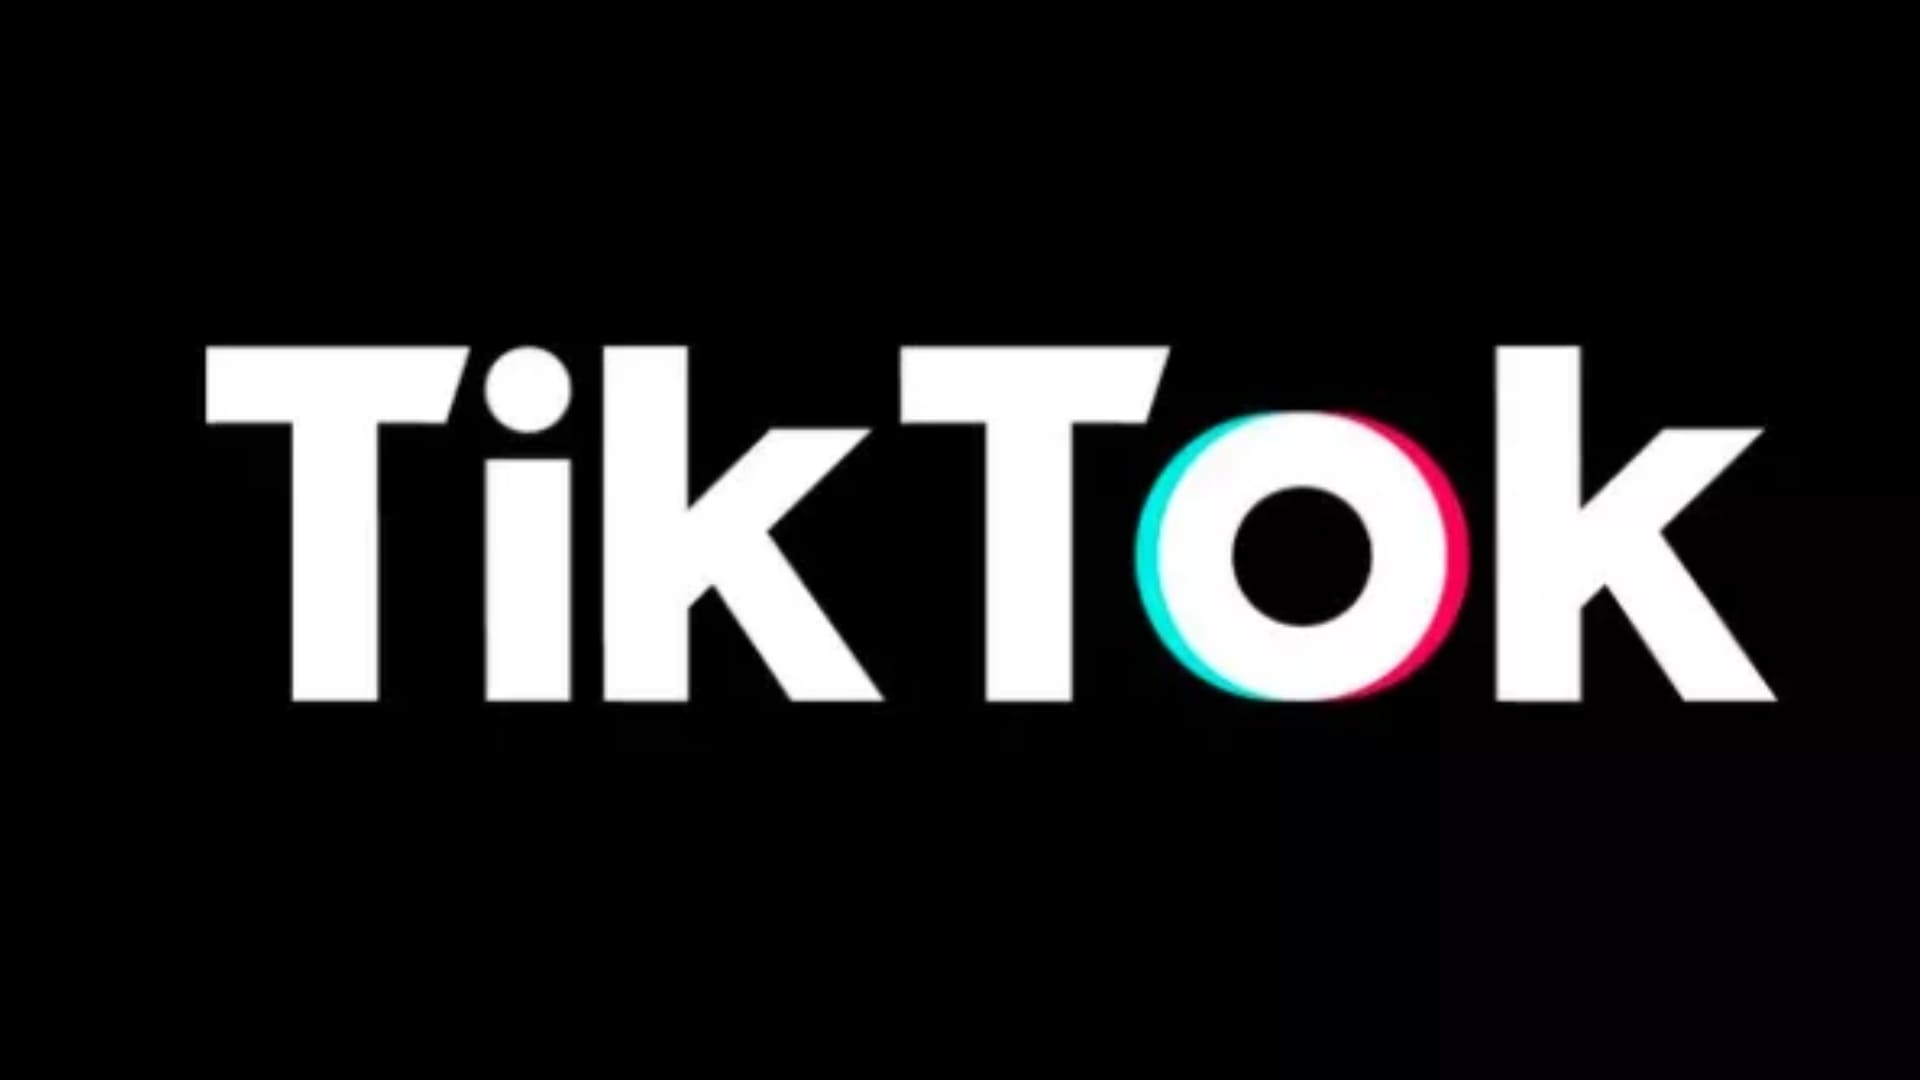 Download Tik Tok Image on 24wallpaper